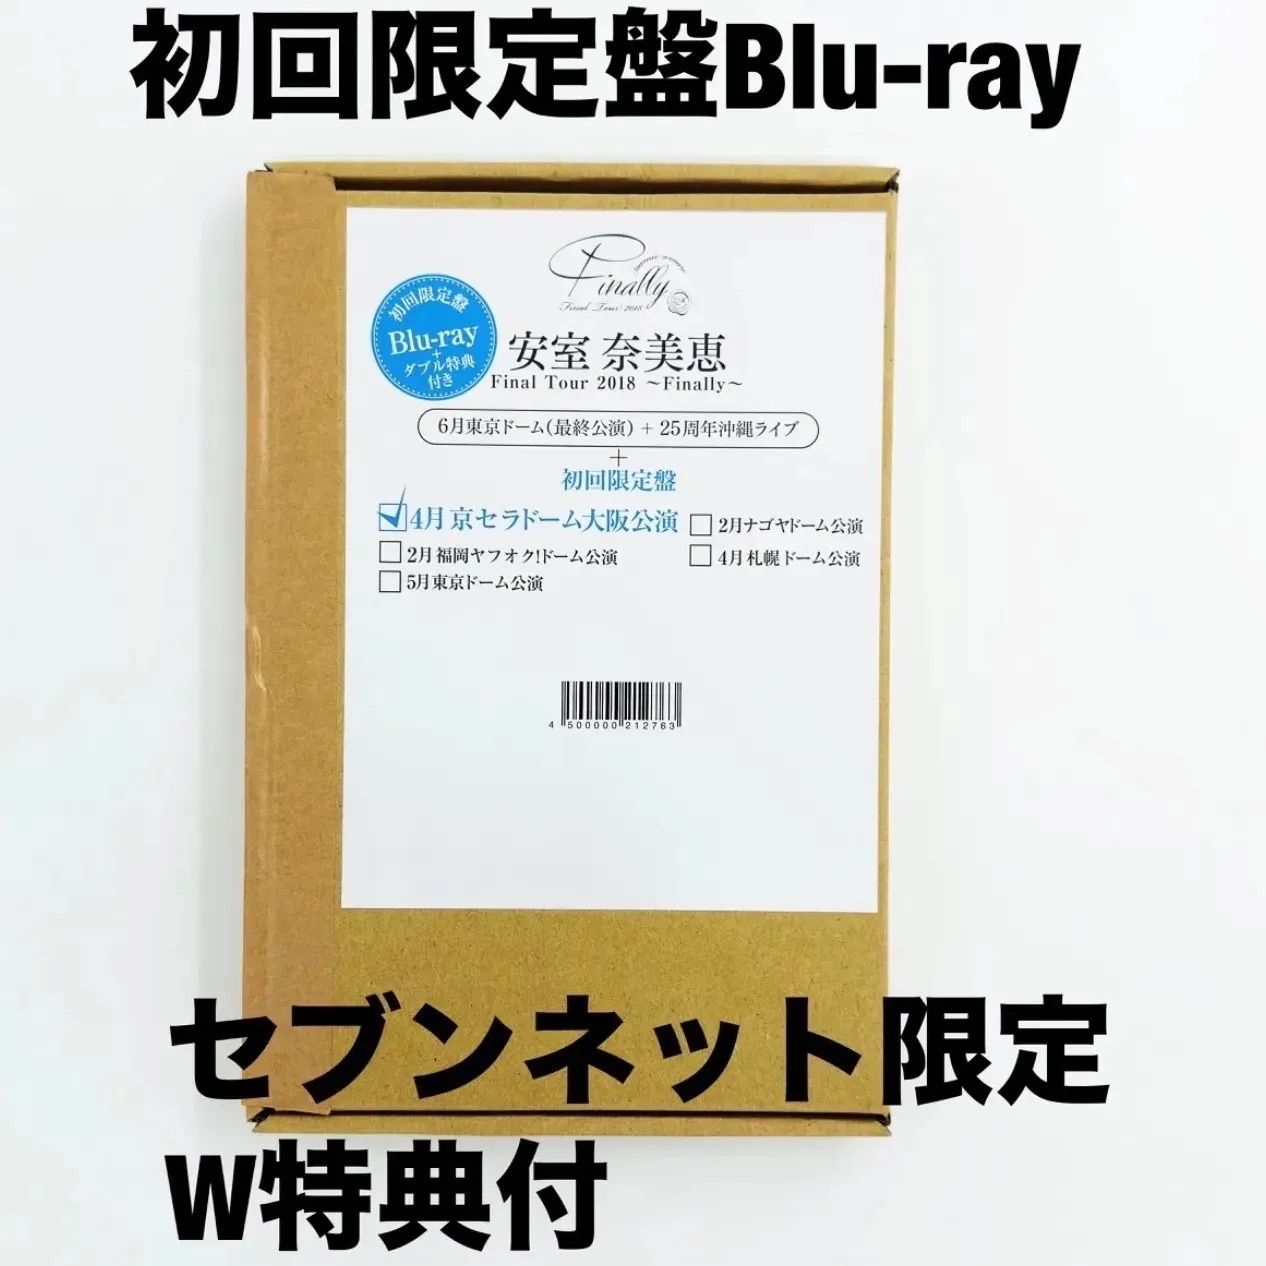 新品・完全未開封 初回限定盤Blu-ray3枚組 安室奈美恵 namie amuro 